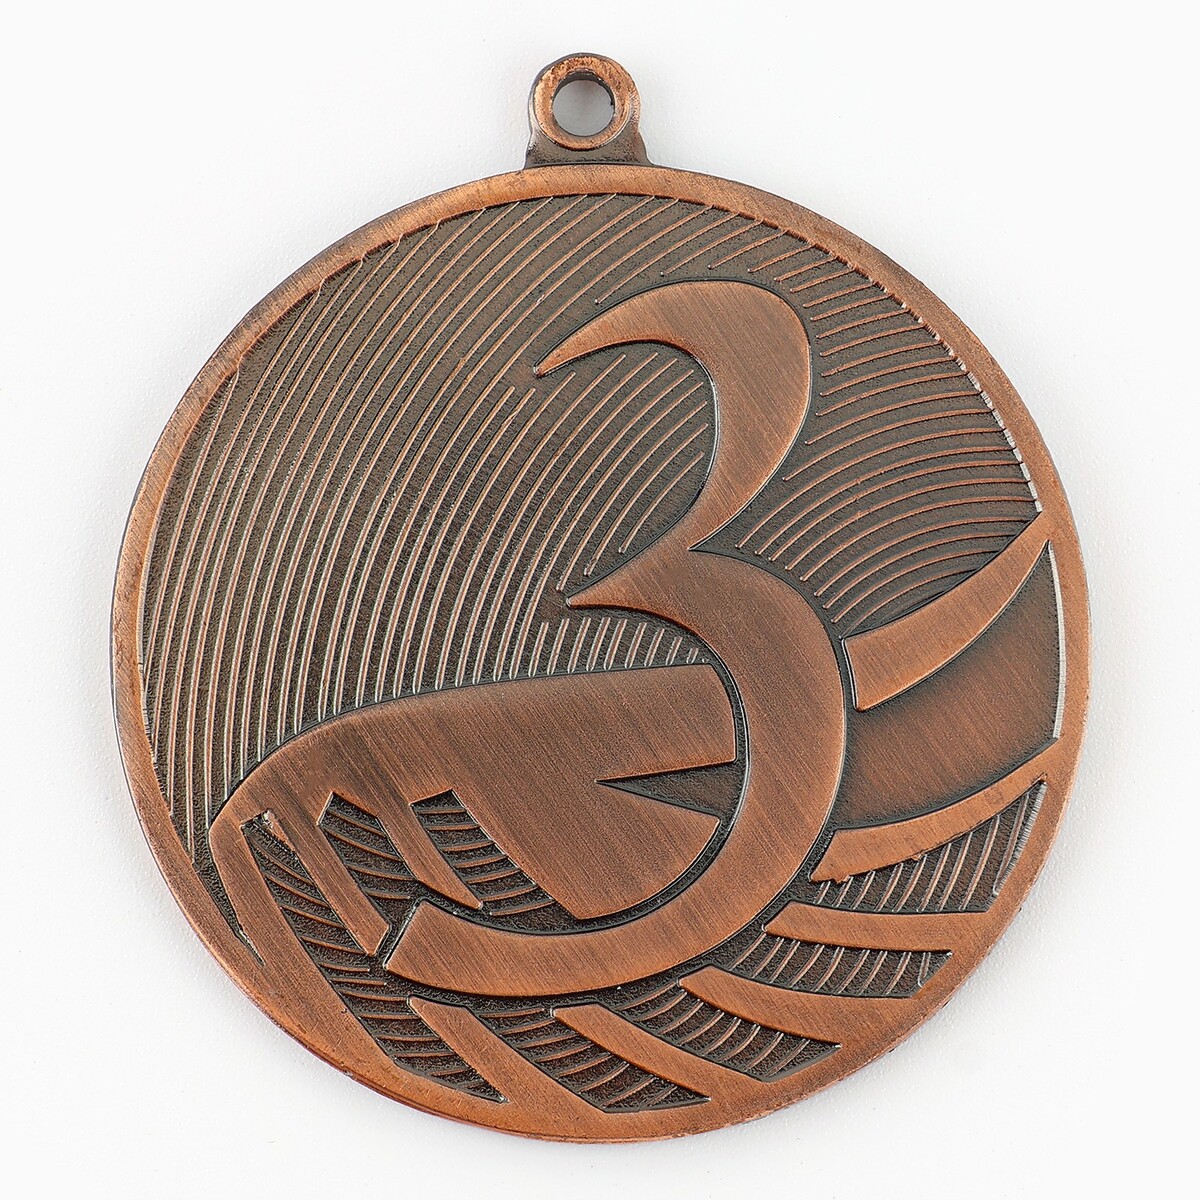 Медаль призовая 001 диам 5см. 3 место. цвет бронз. без ленты медаль призовая 196 диам 5 см 3 место бронз без ленты